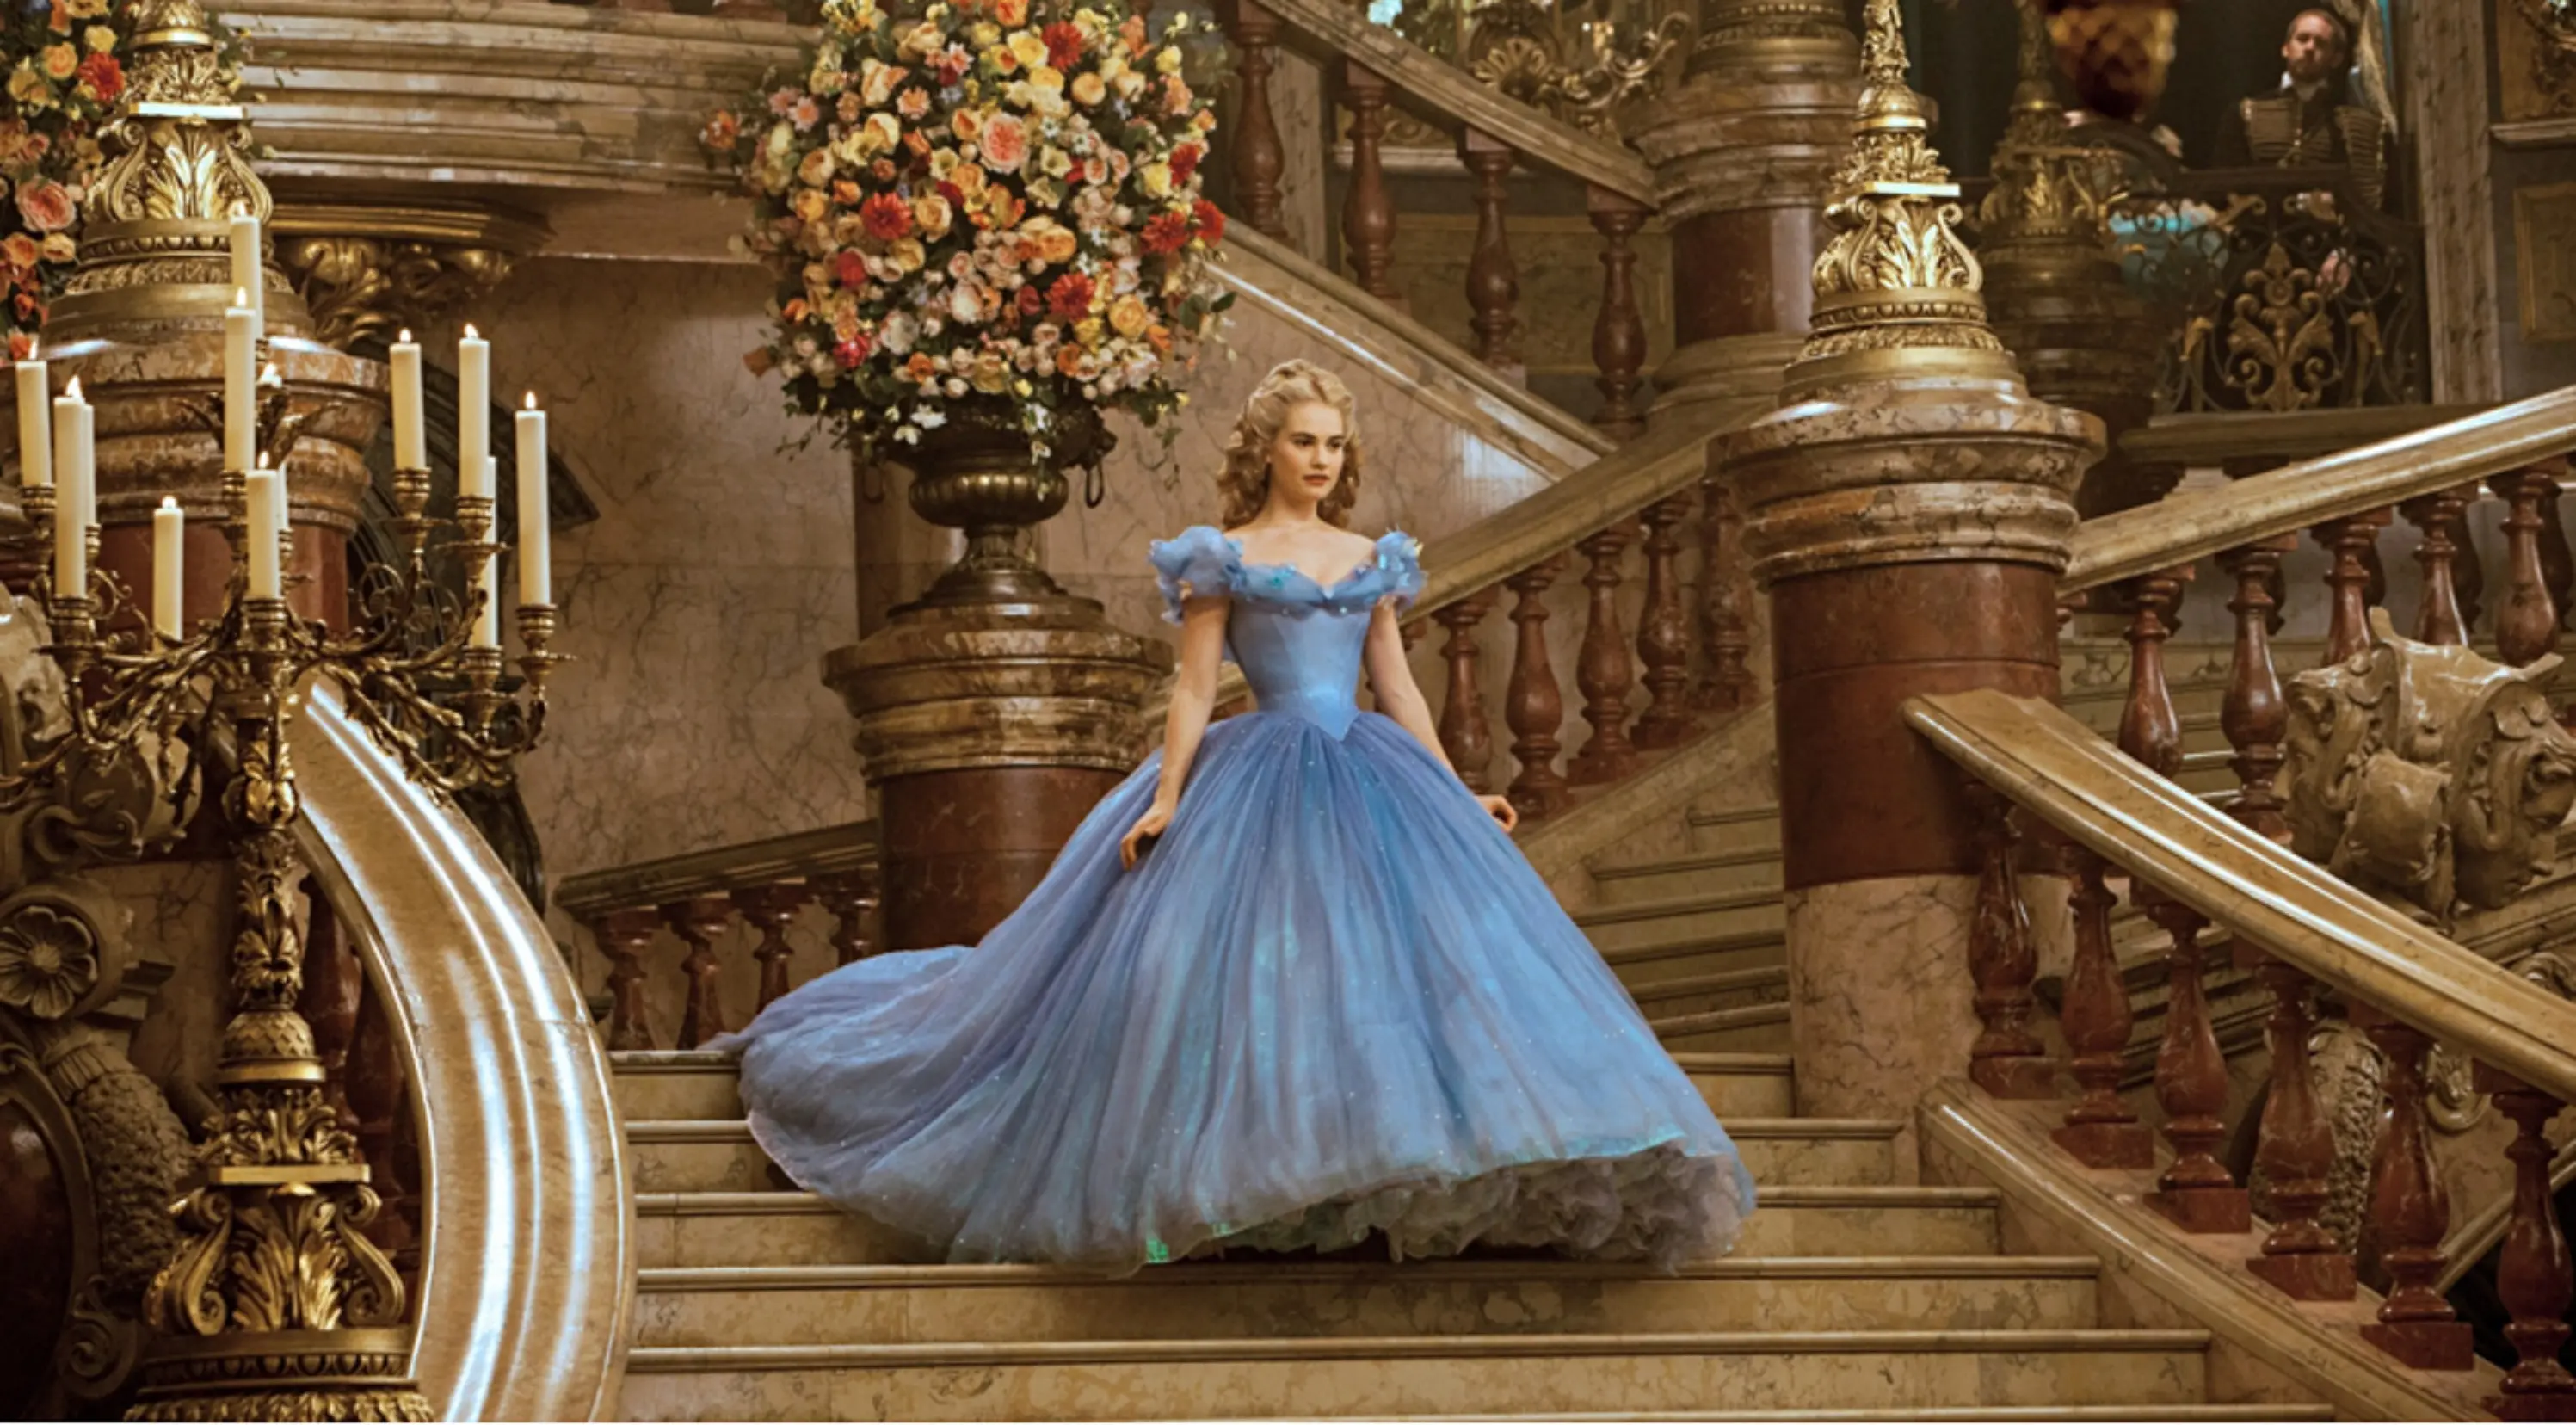 Cinderella. (Via: youTube.com)